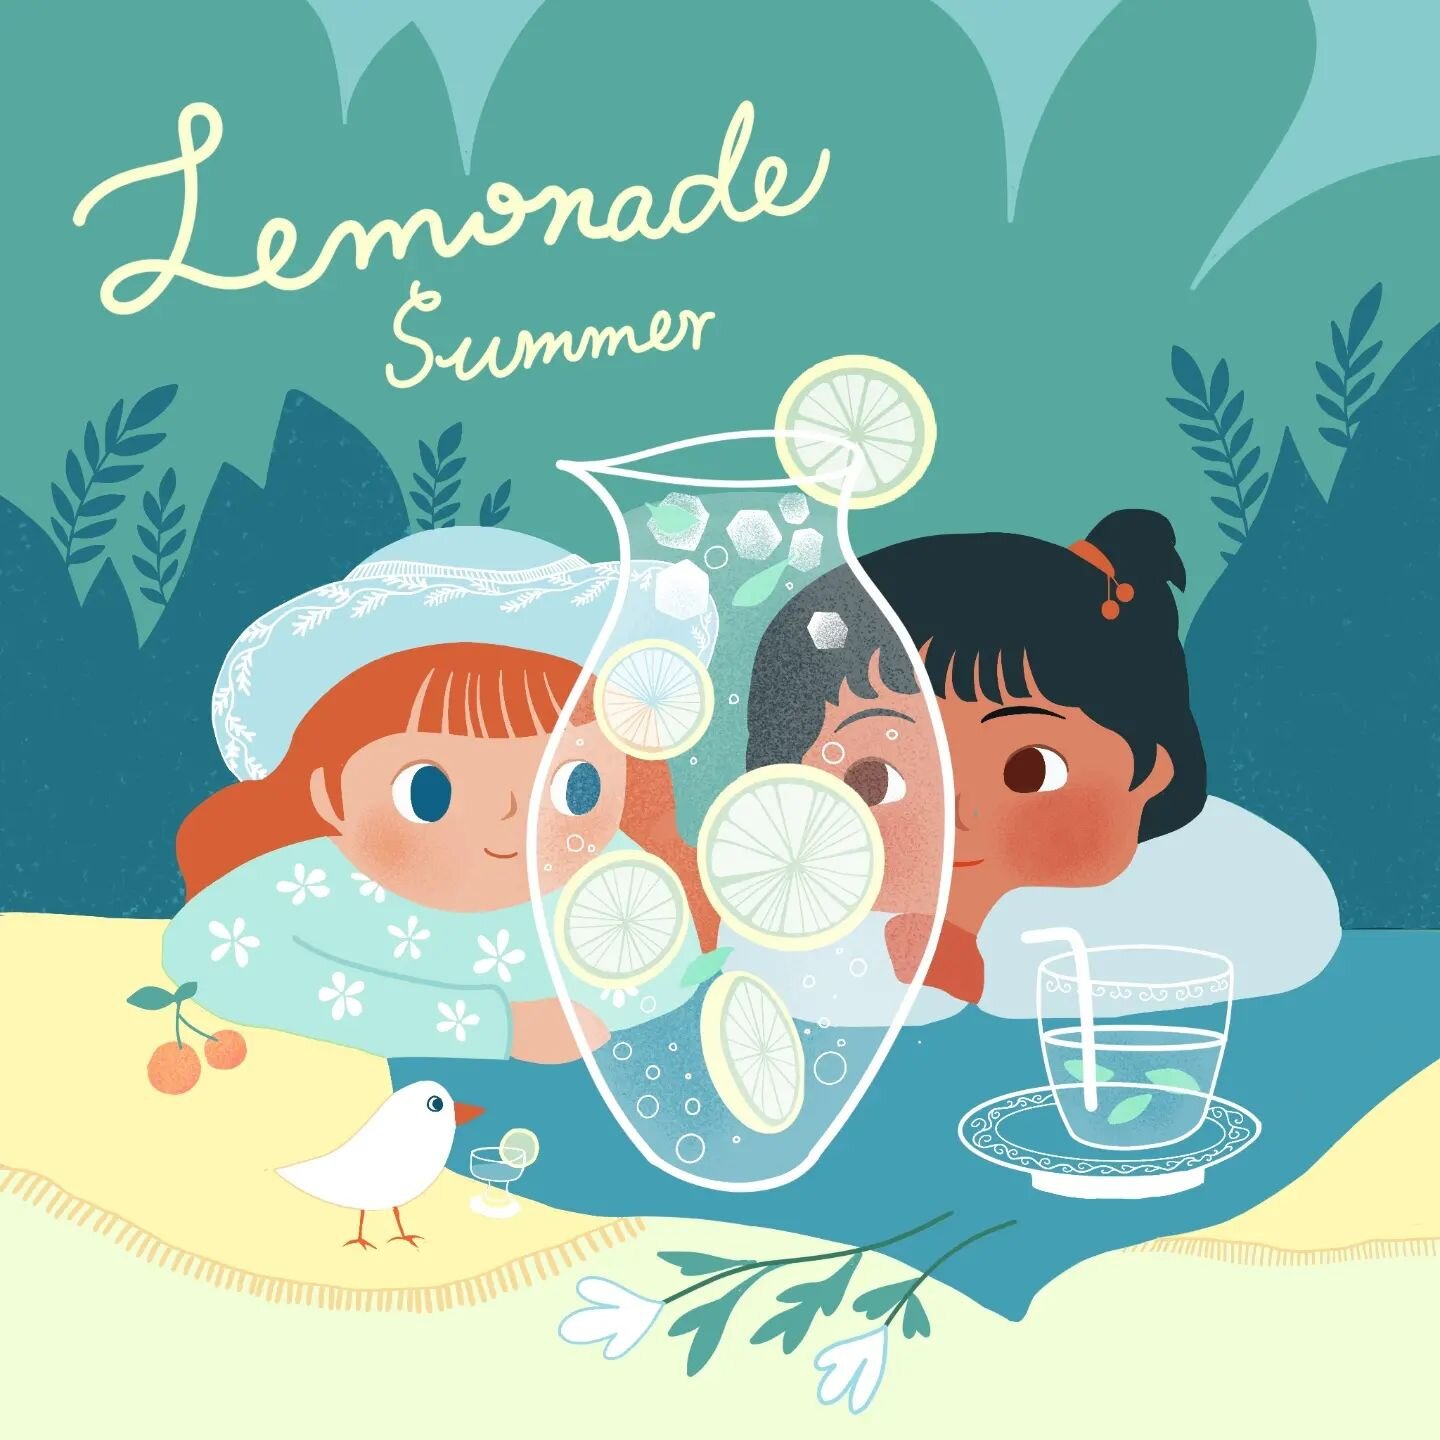 Lemonade Summer.

#illustration #illustrationartists #lemonade #theycookanddraw #summer
#friends